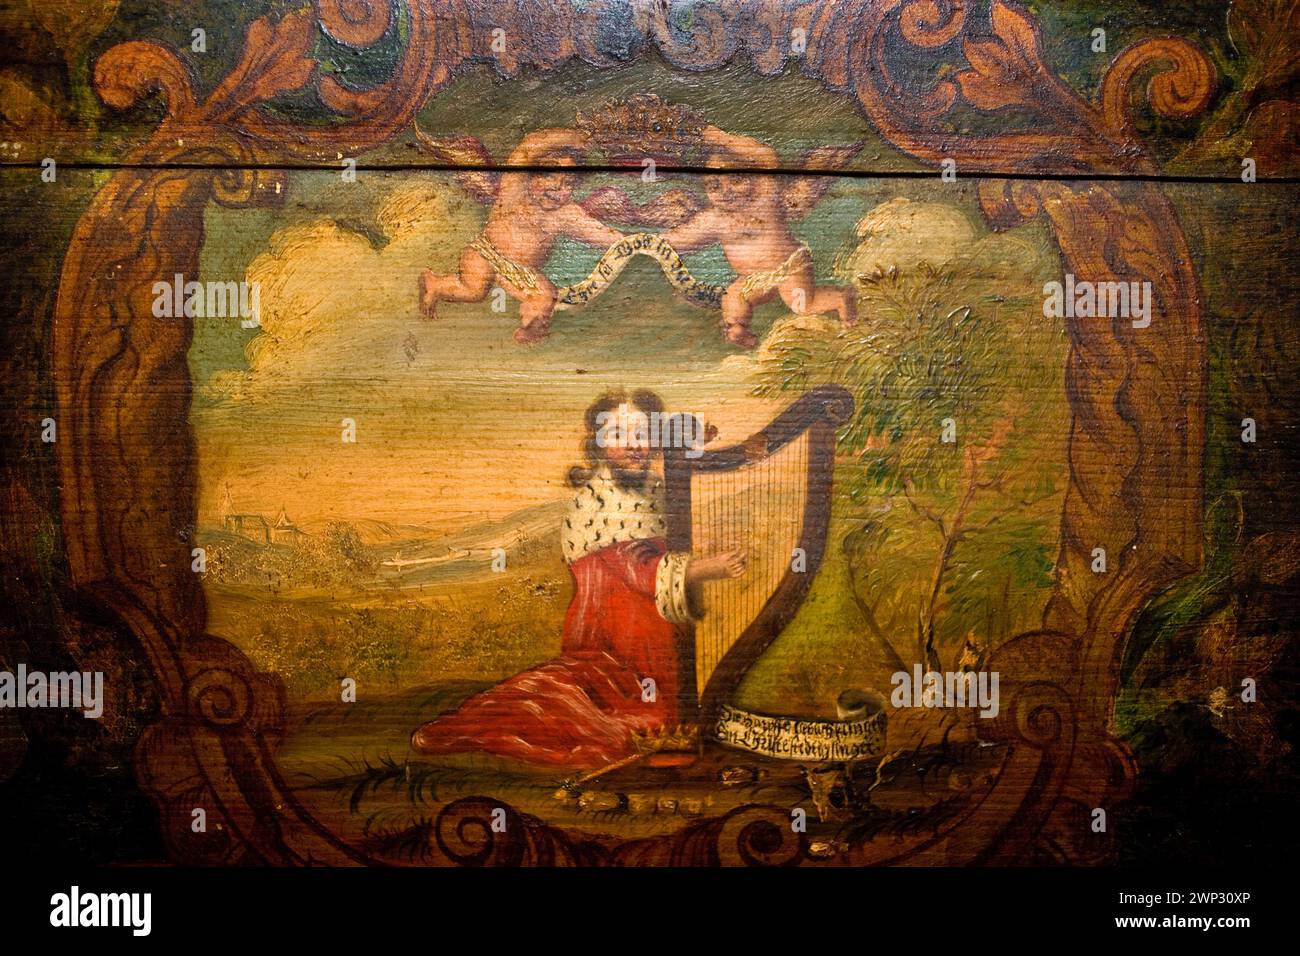 Roi David avec la harpe, peinture sur un psaltère, une harpe de table d'Estonie, XVIIe siècle, Haus Kemnade, Hattingen, Rhénanie du Nord-Westphalie, Allemagne, E Banque D'Images